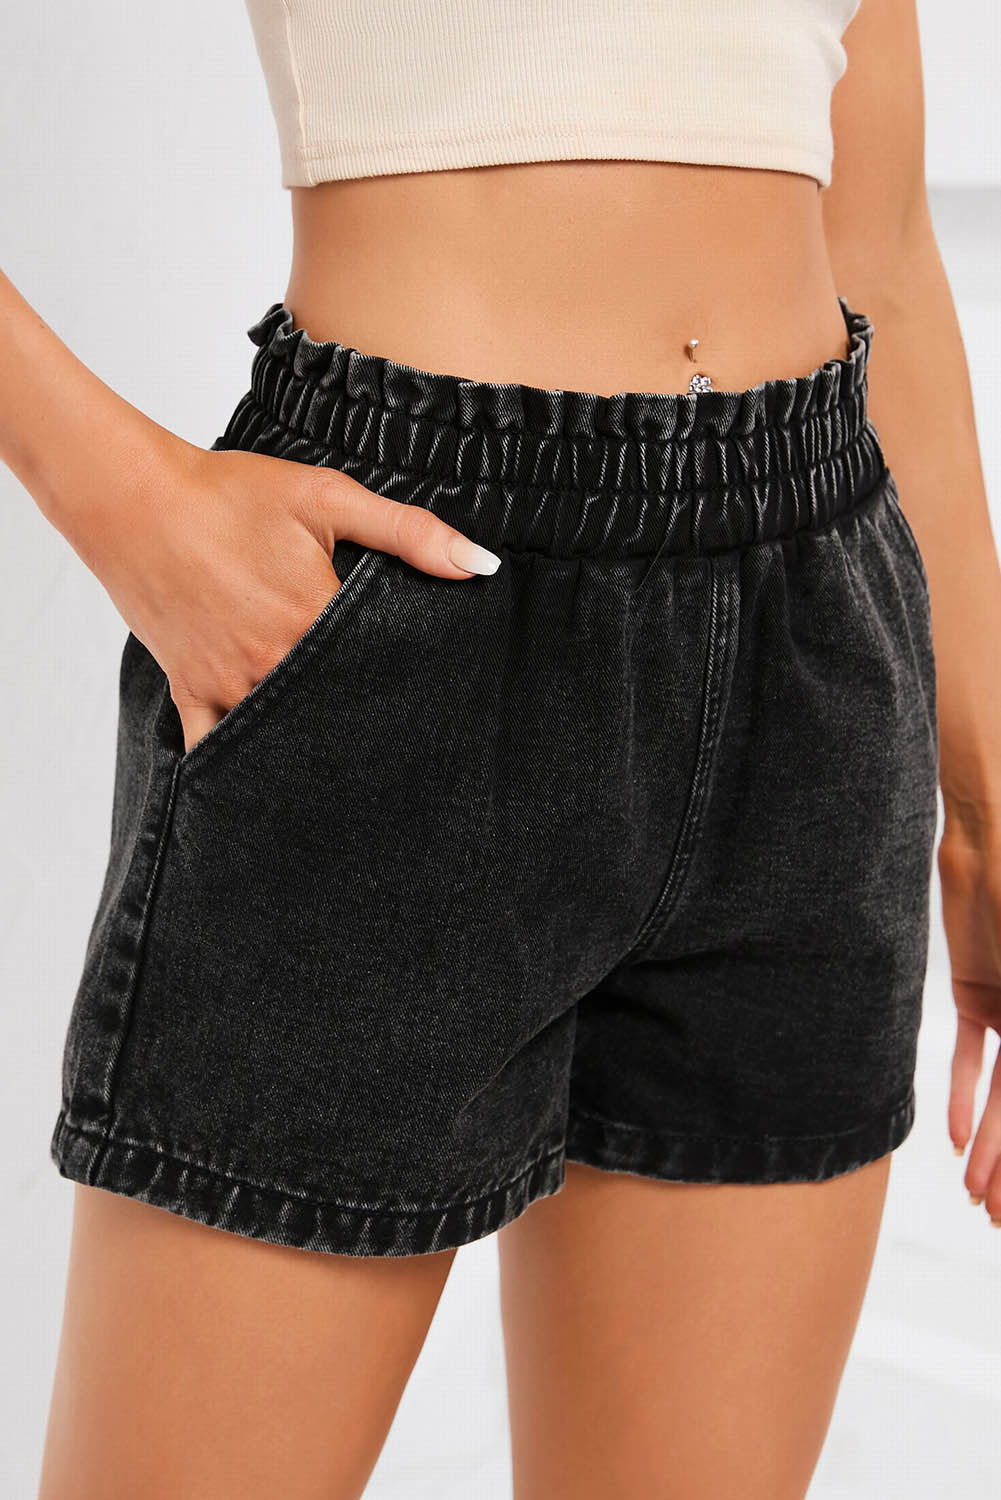 Črne retro kratke hlače iz jeansa z visokim pasom in elastiko, oprane z belilom